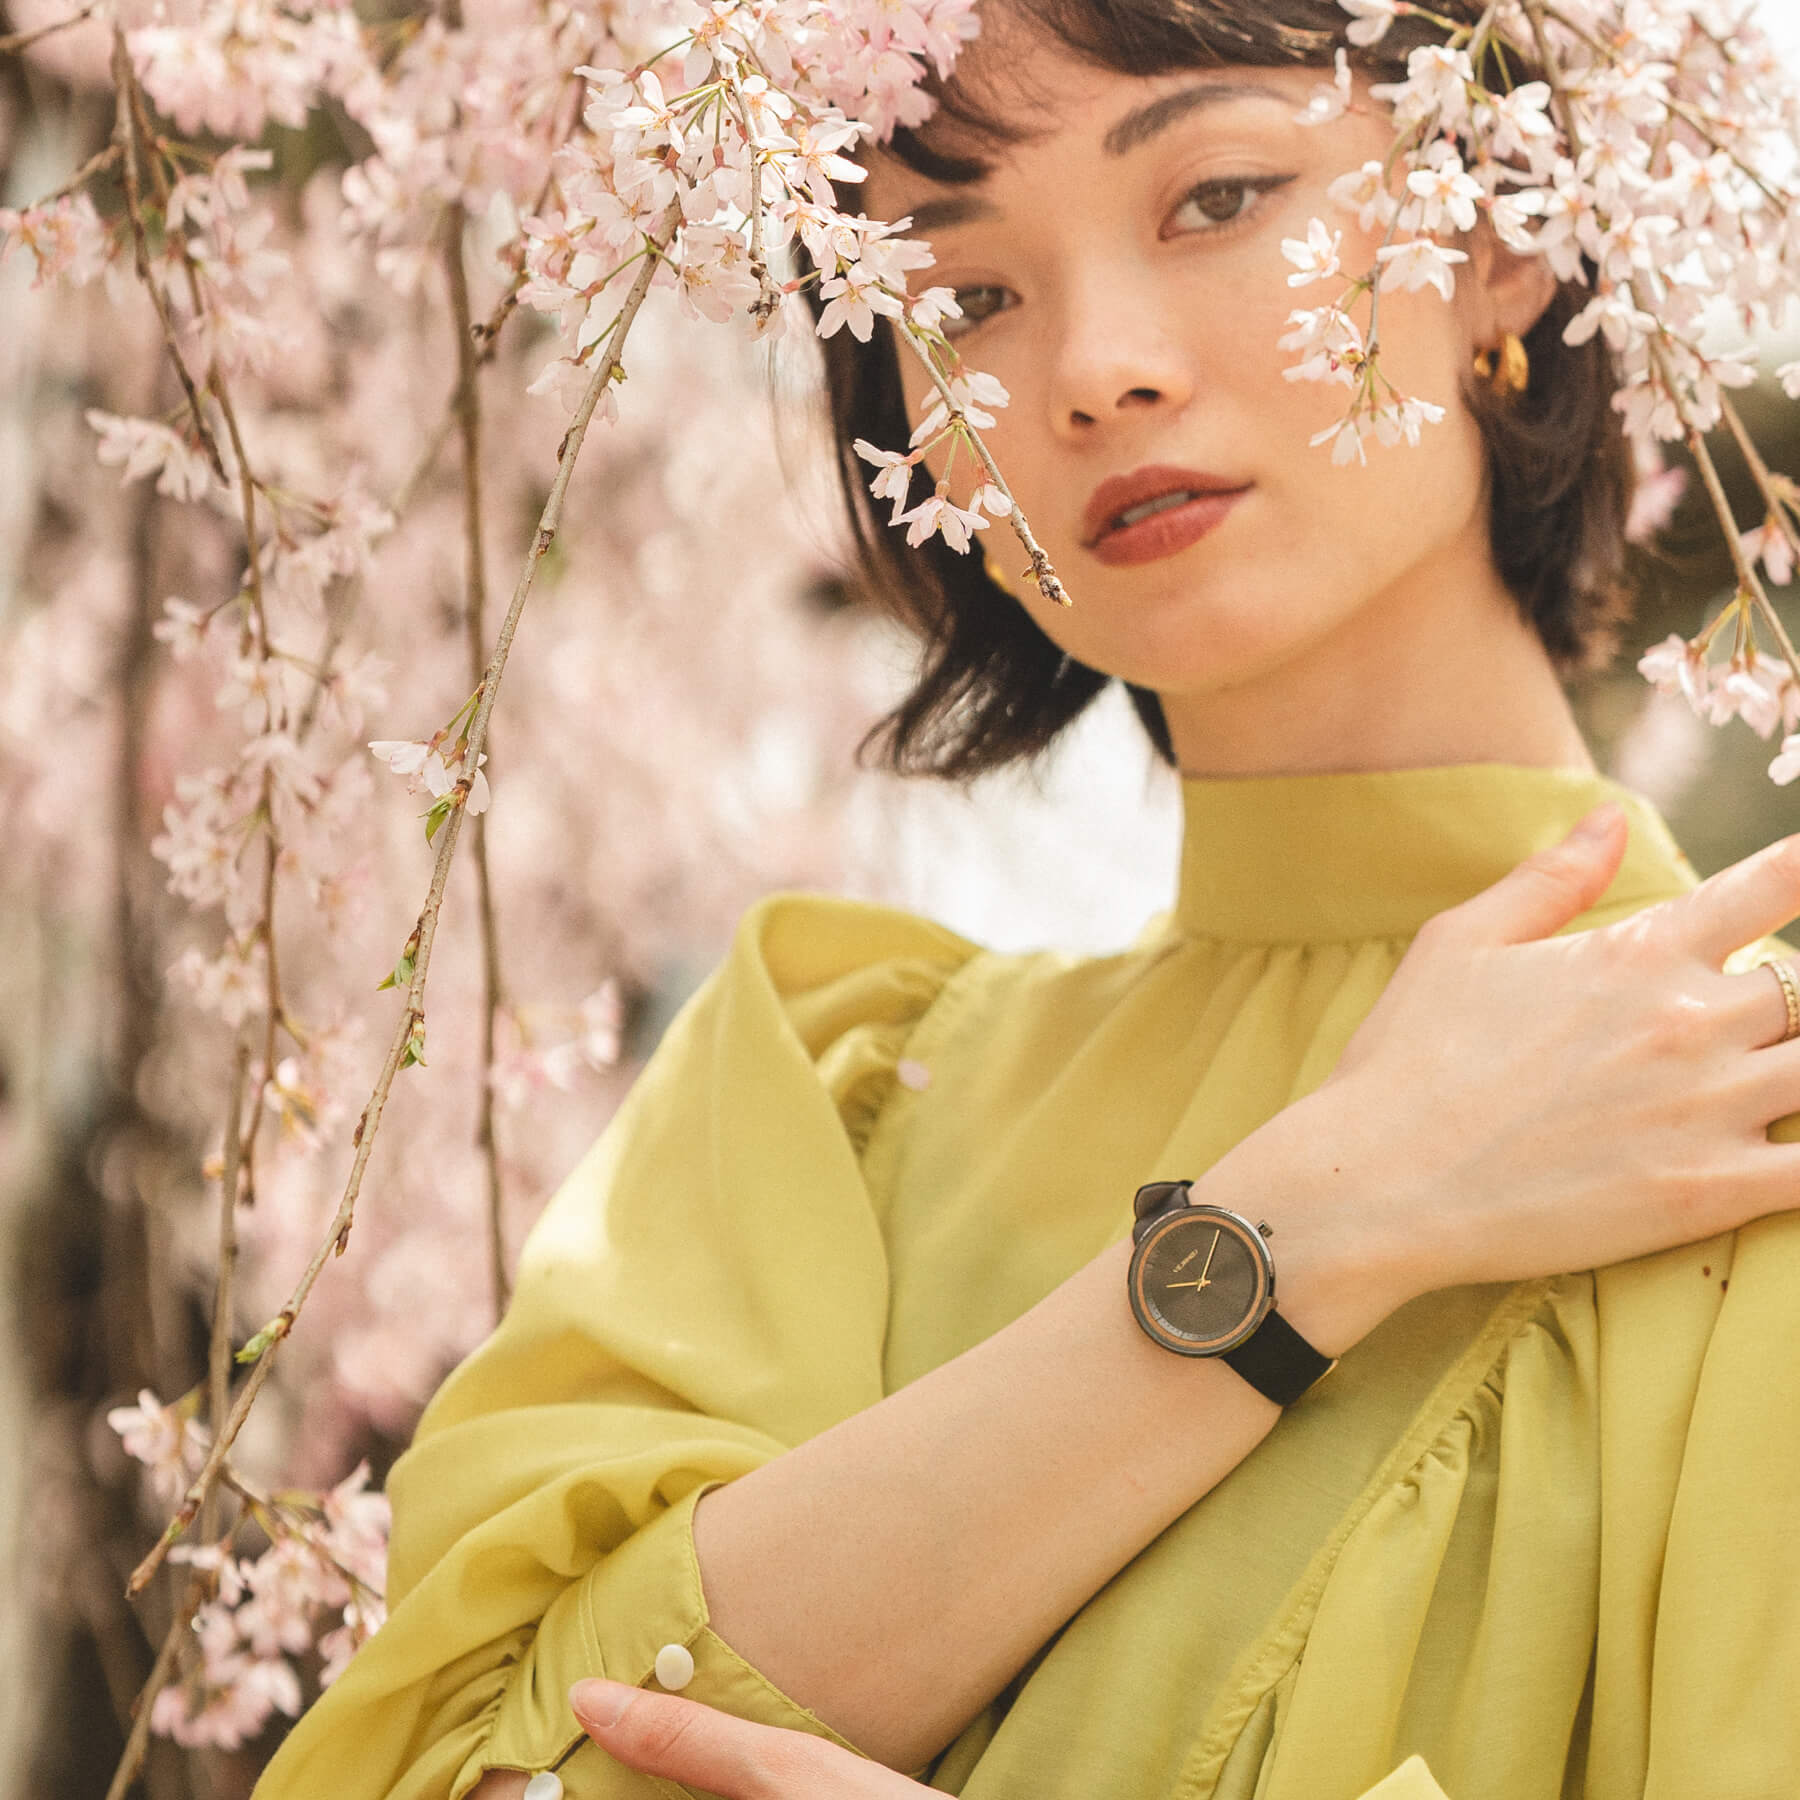 ヴェアホイの黒の腕時計を身に付けながら桜の木の後ろでポーズをとる女性